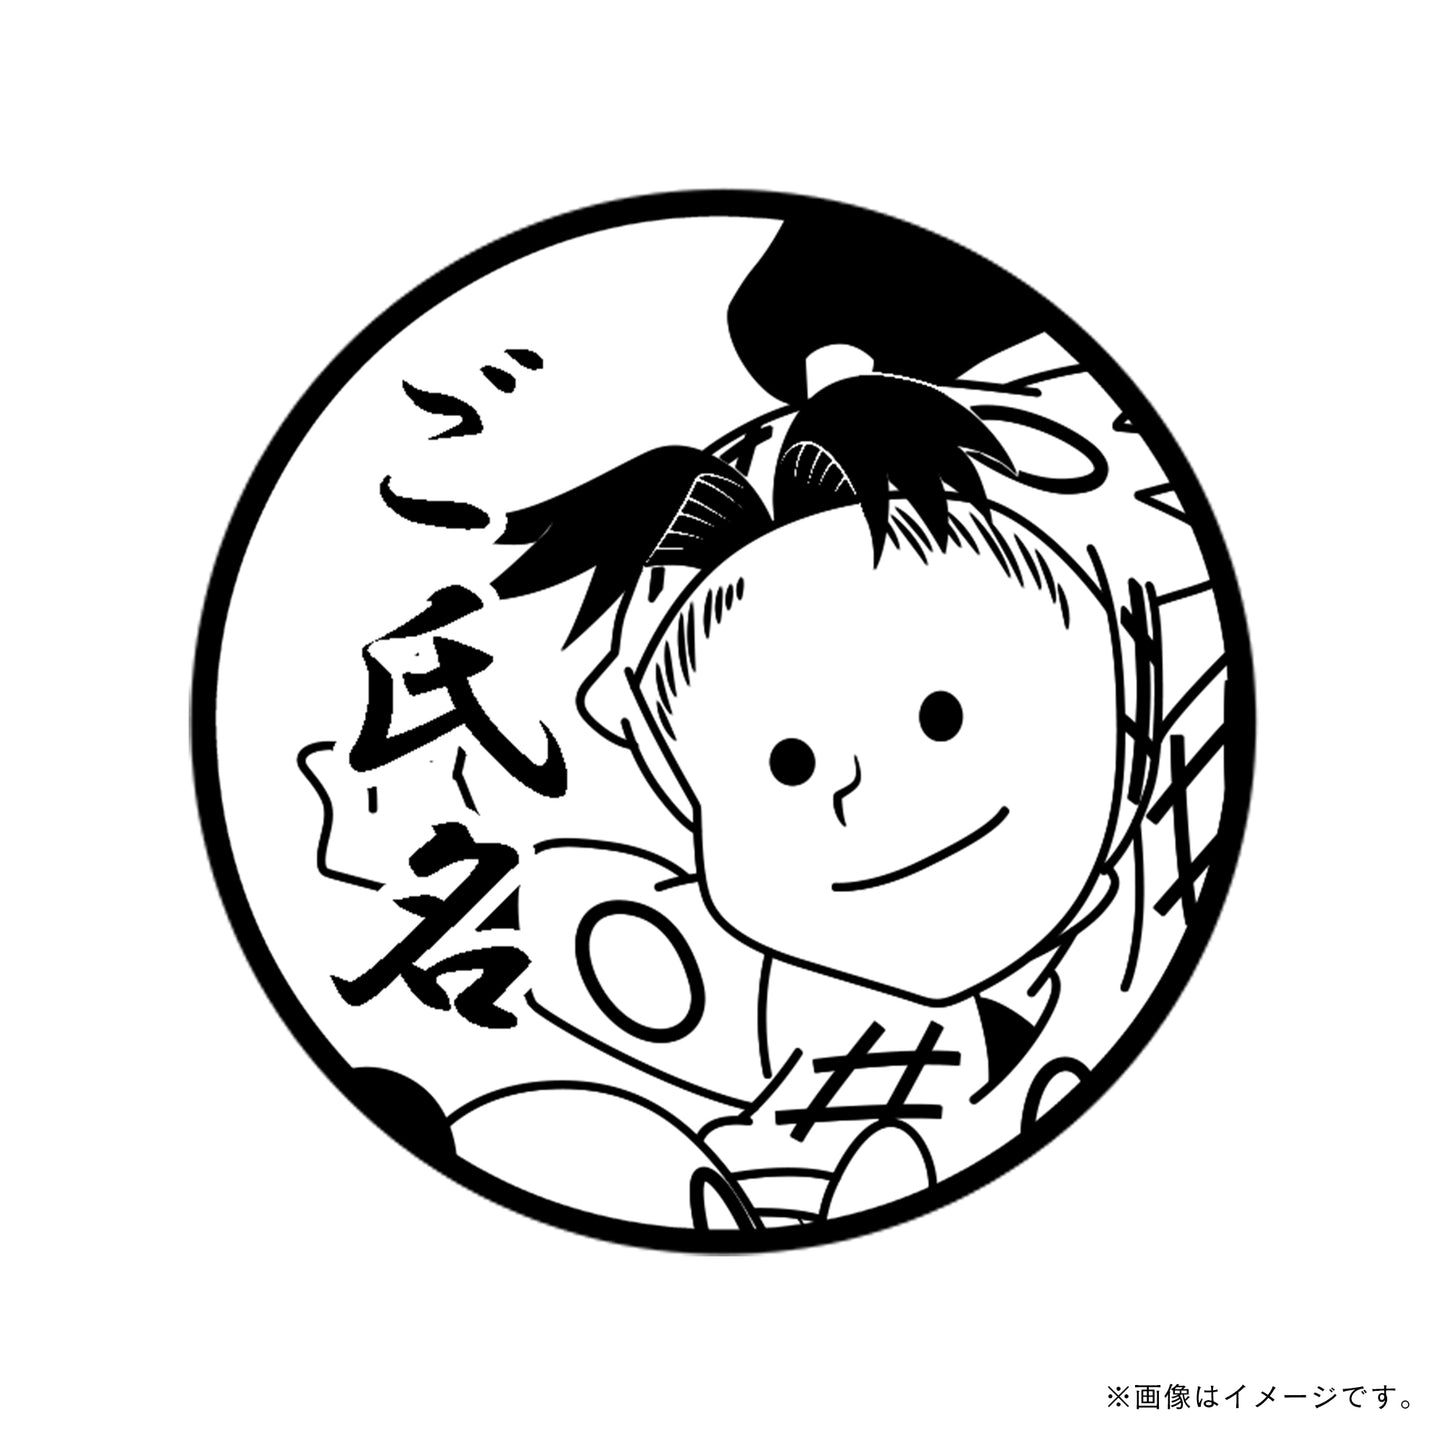 【忍たま乱太郎】1年生・加藤団蔵・丸印18mm